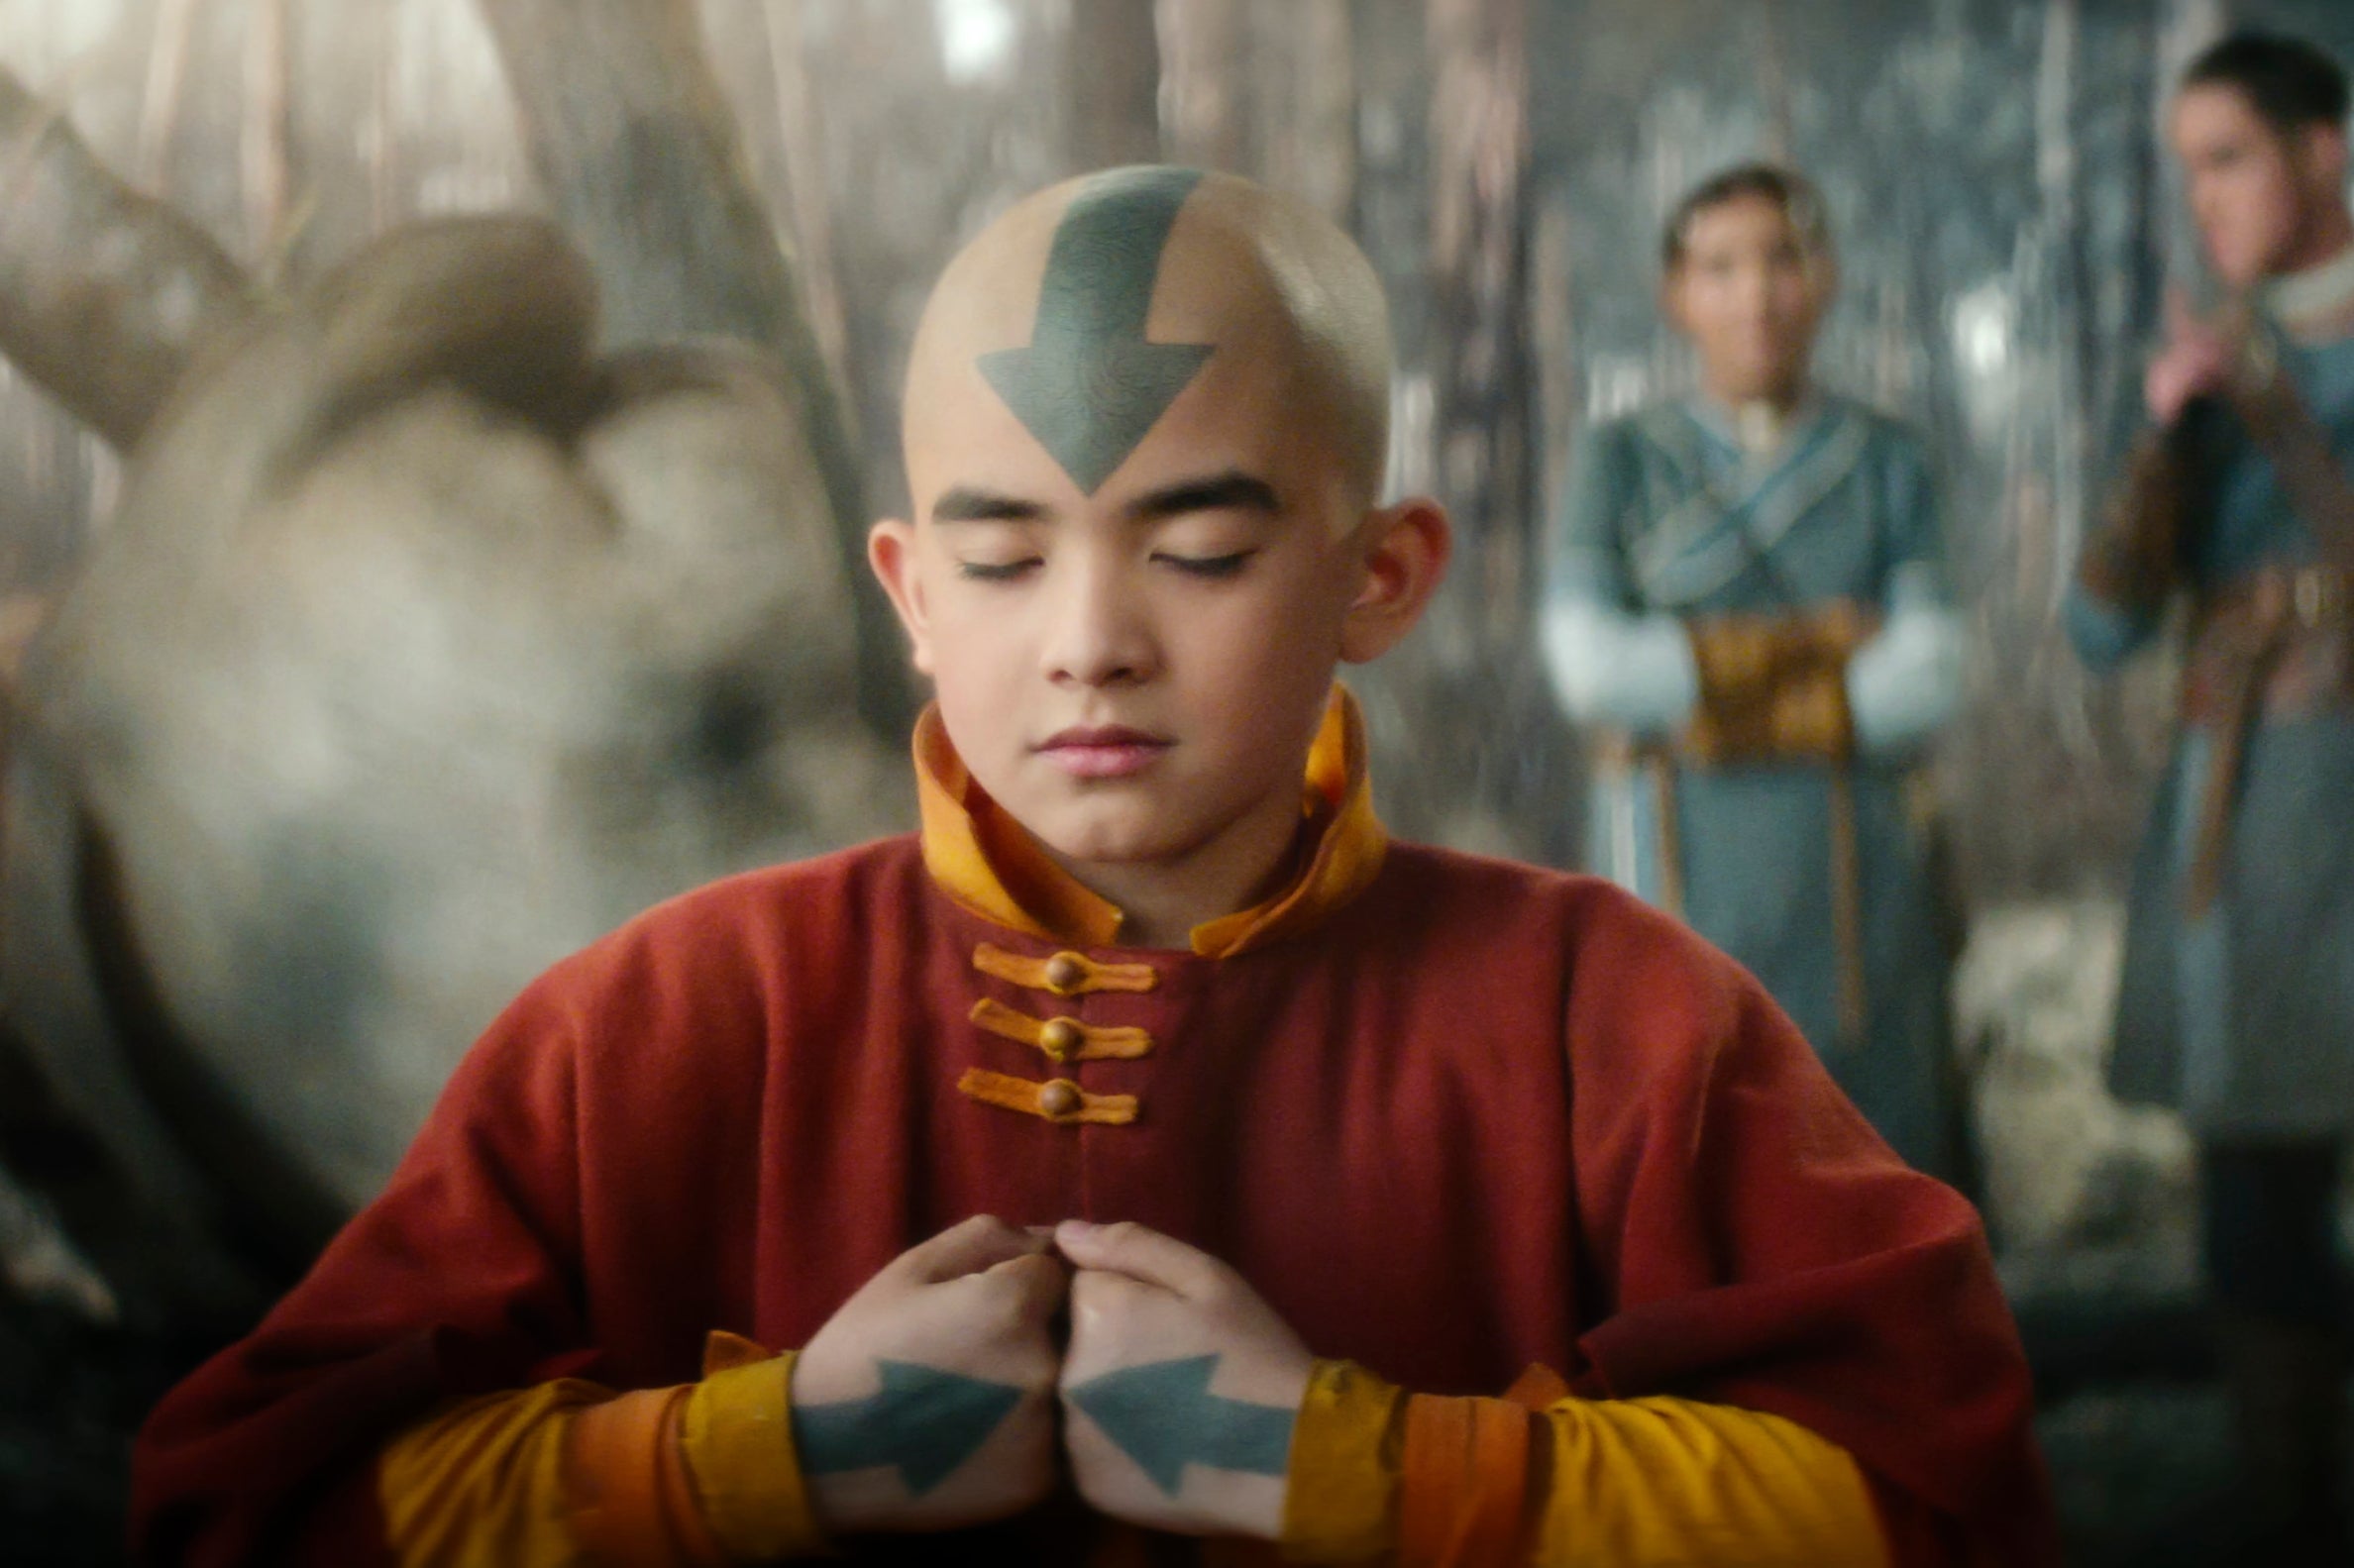 Gordon Cormier as Aang in ‘Avatar: The Last Airbender'